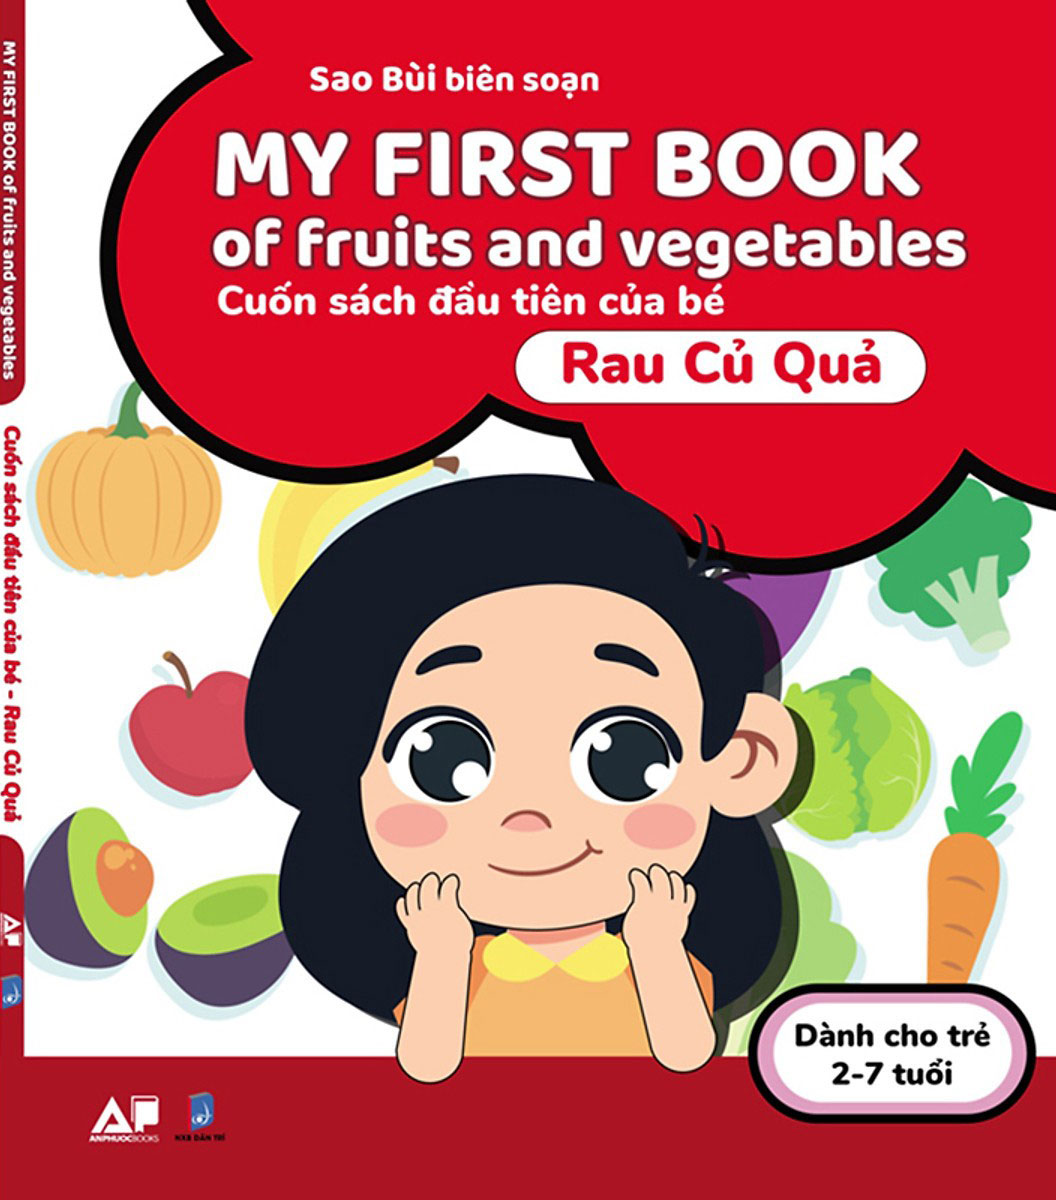 My First Book Of Fruits And Vegetables - Cuốn Sách Đầu Tiên Của Bé - Rau Củ Quả